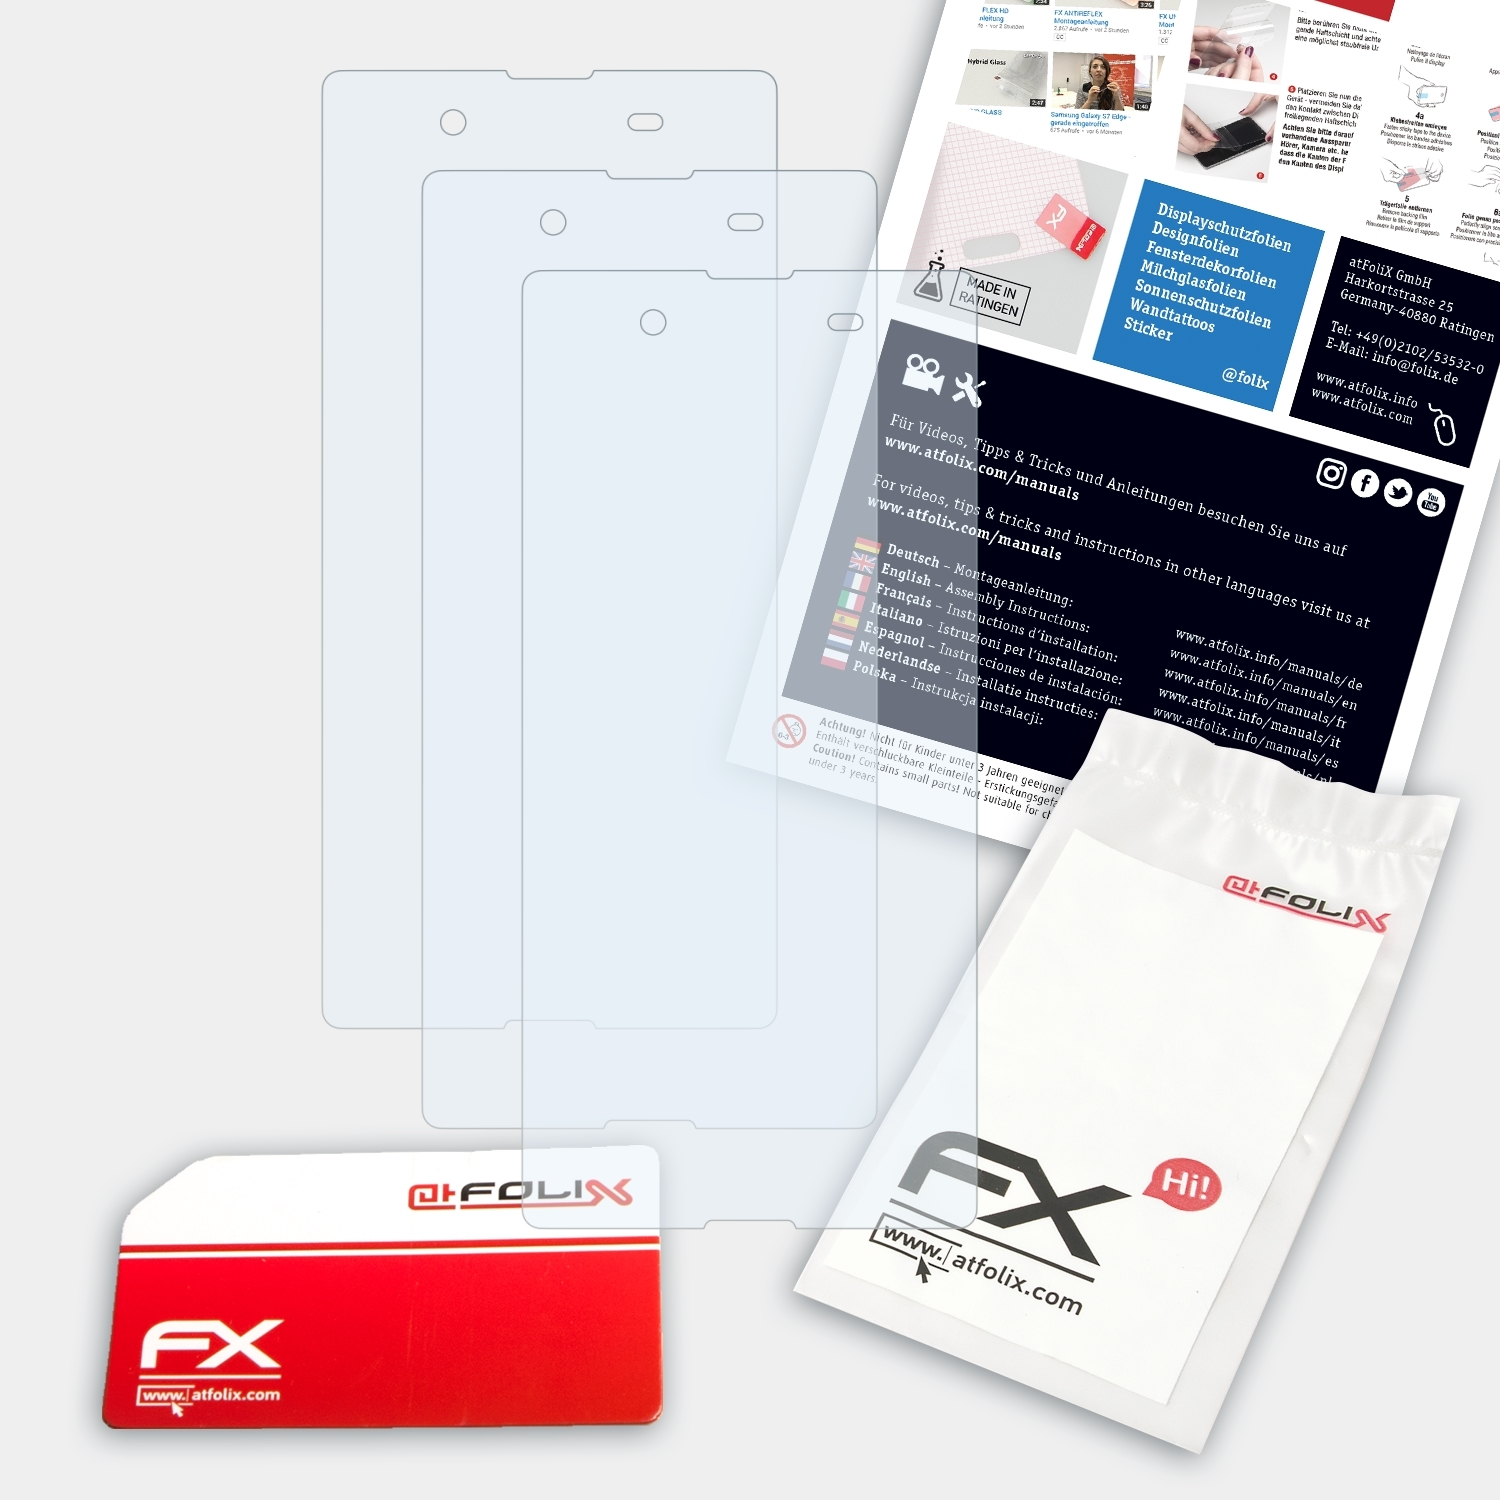 FX-Clear 3x E3) ATFOLIX Sony Xperia Displayschutz(für